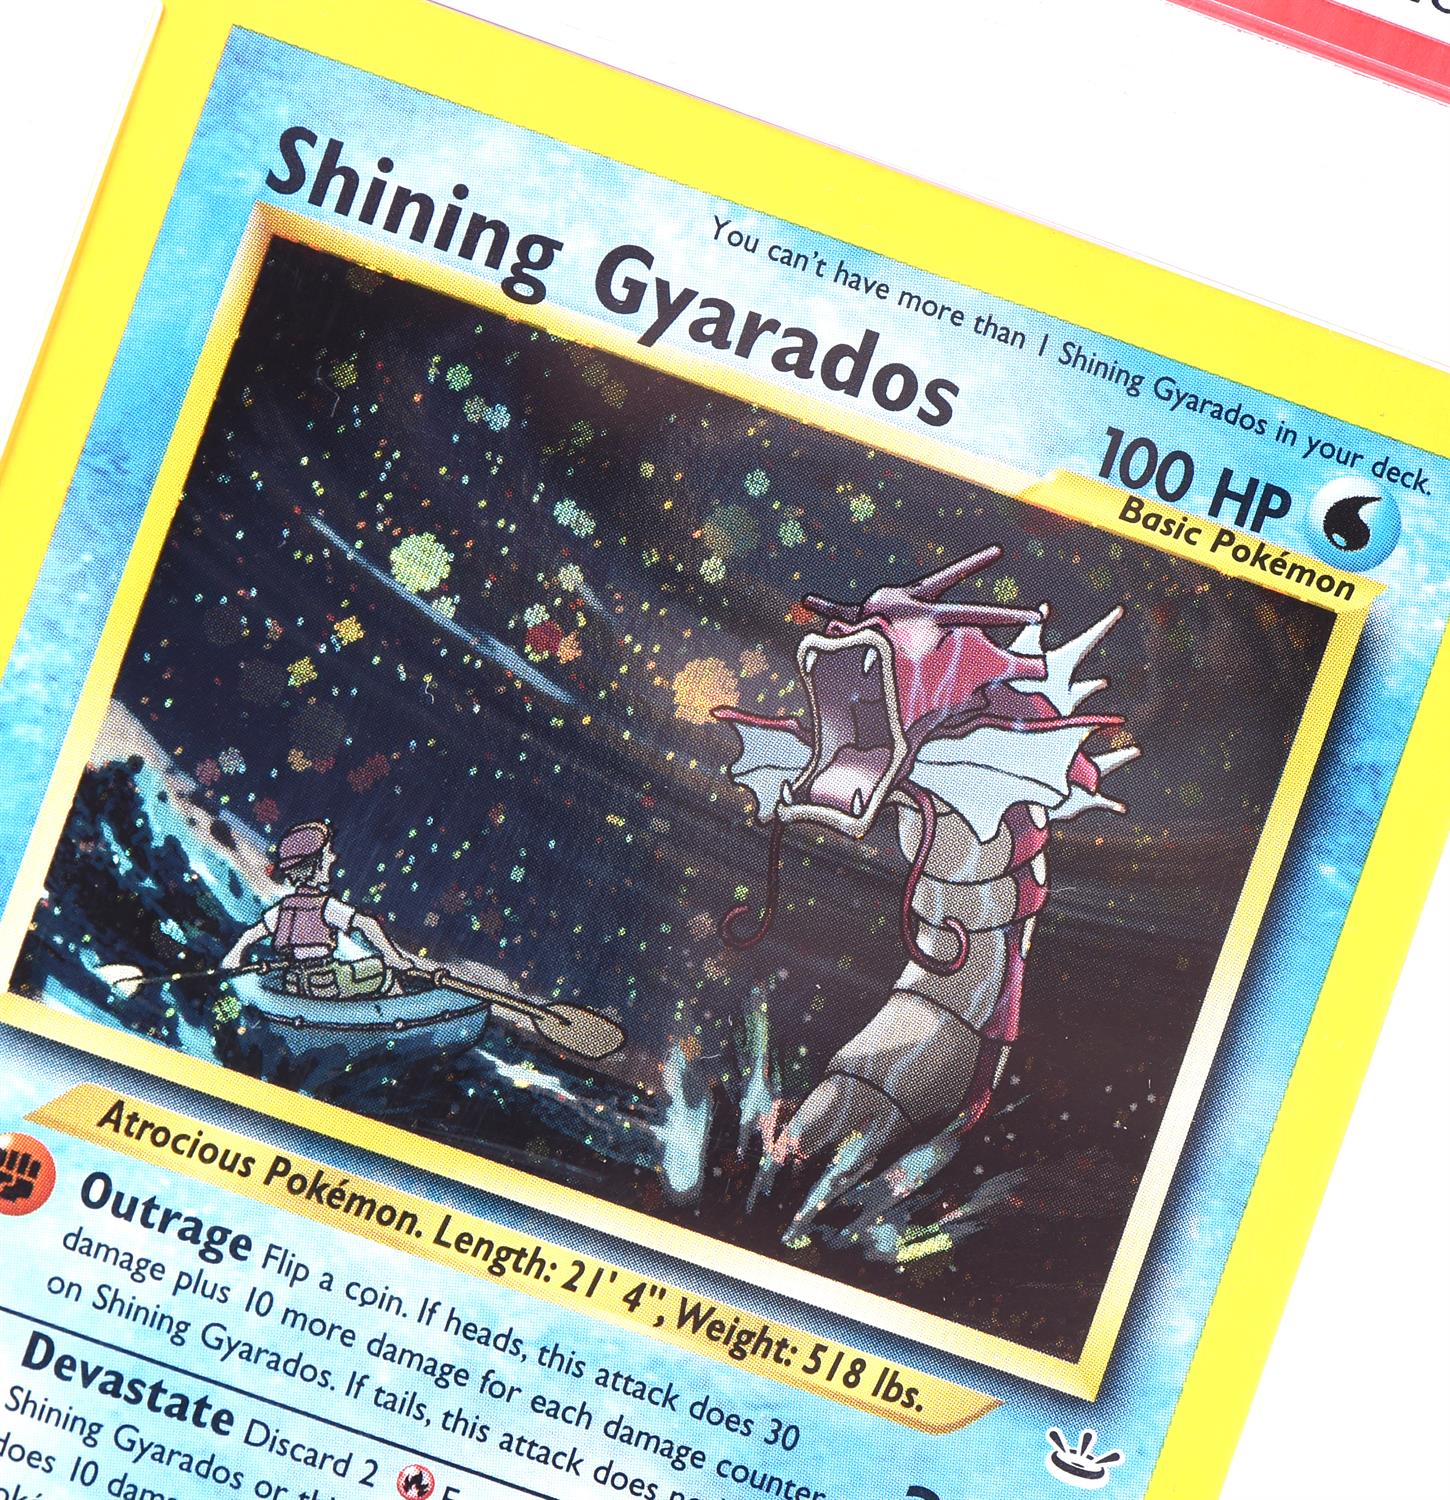 Pokemon TCG. Shining Gyarados 65/64 Holographic Secret rare from Neo Revelation graded PSA 9 Mint. - Image 3 of 4